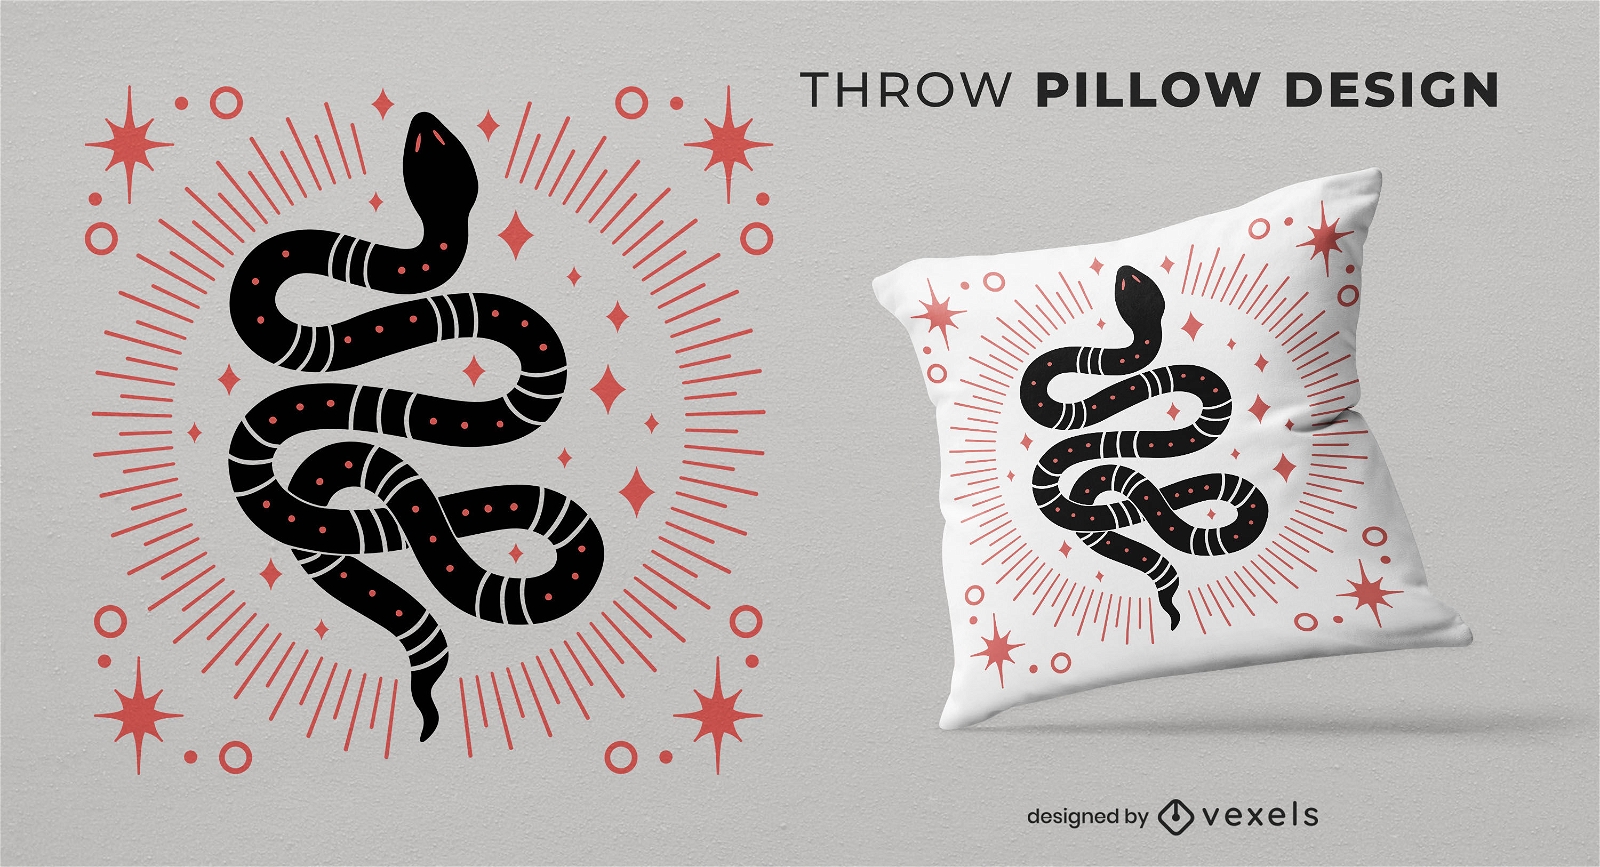 Diseño de almohada de tiro de serpiente esotérica mística